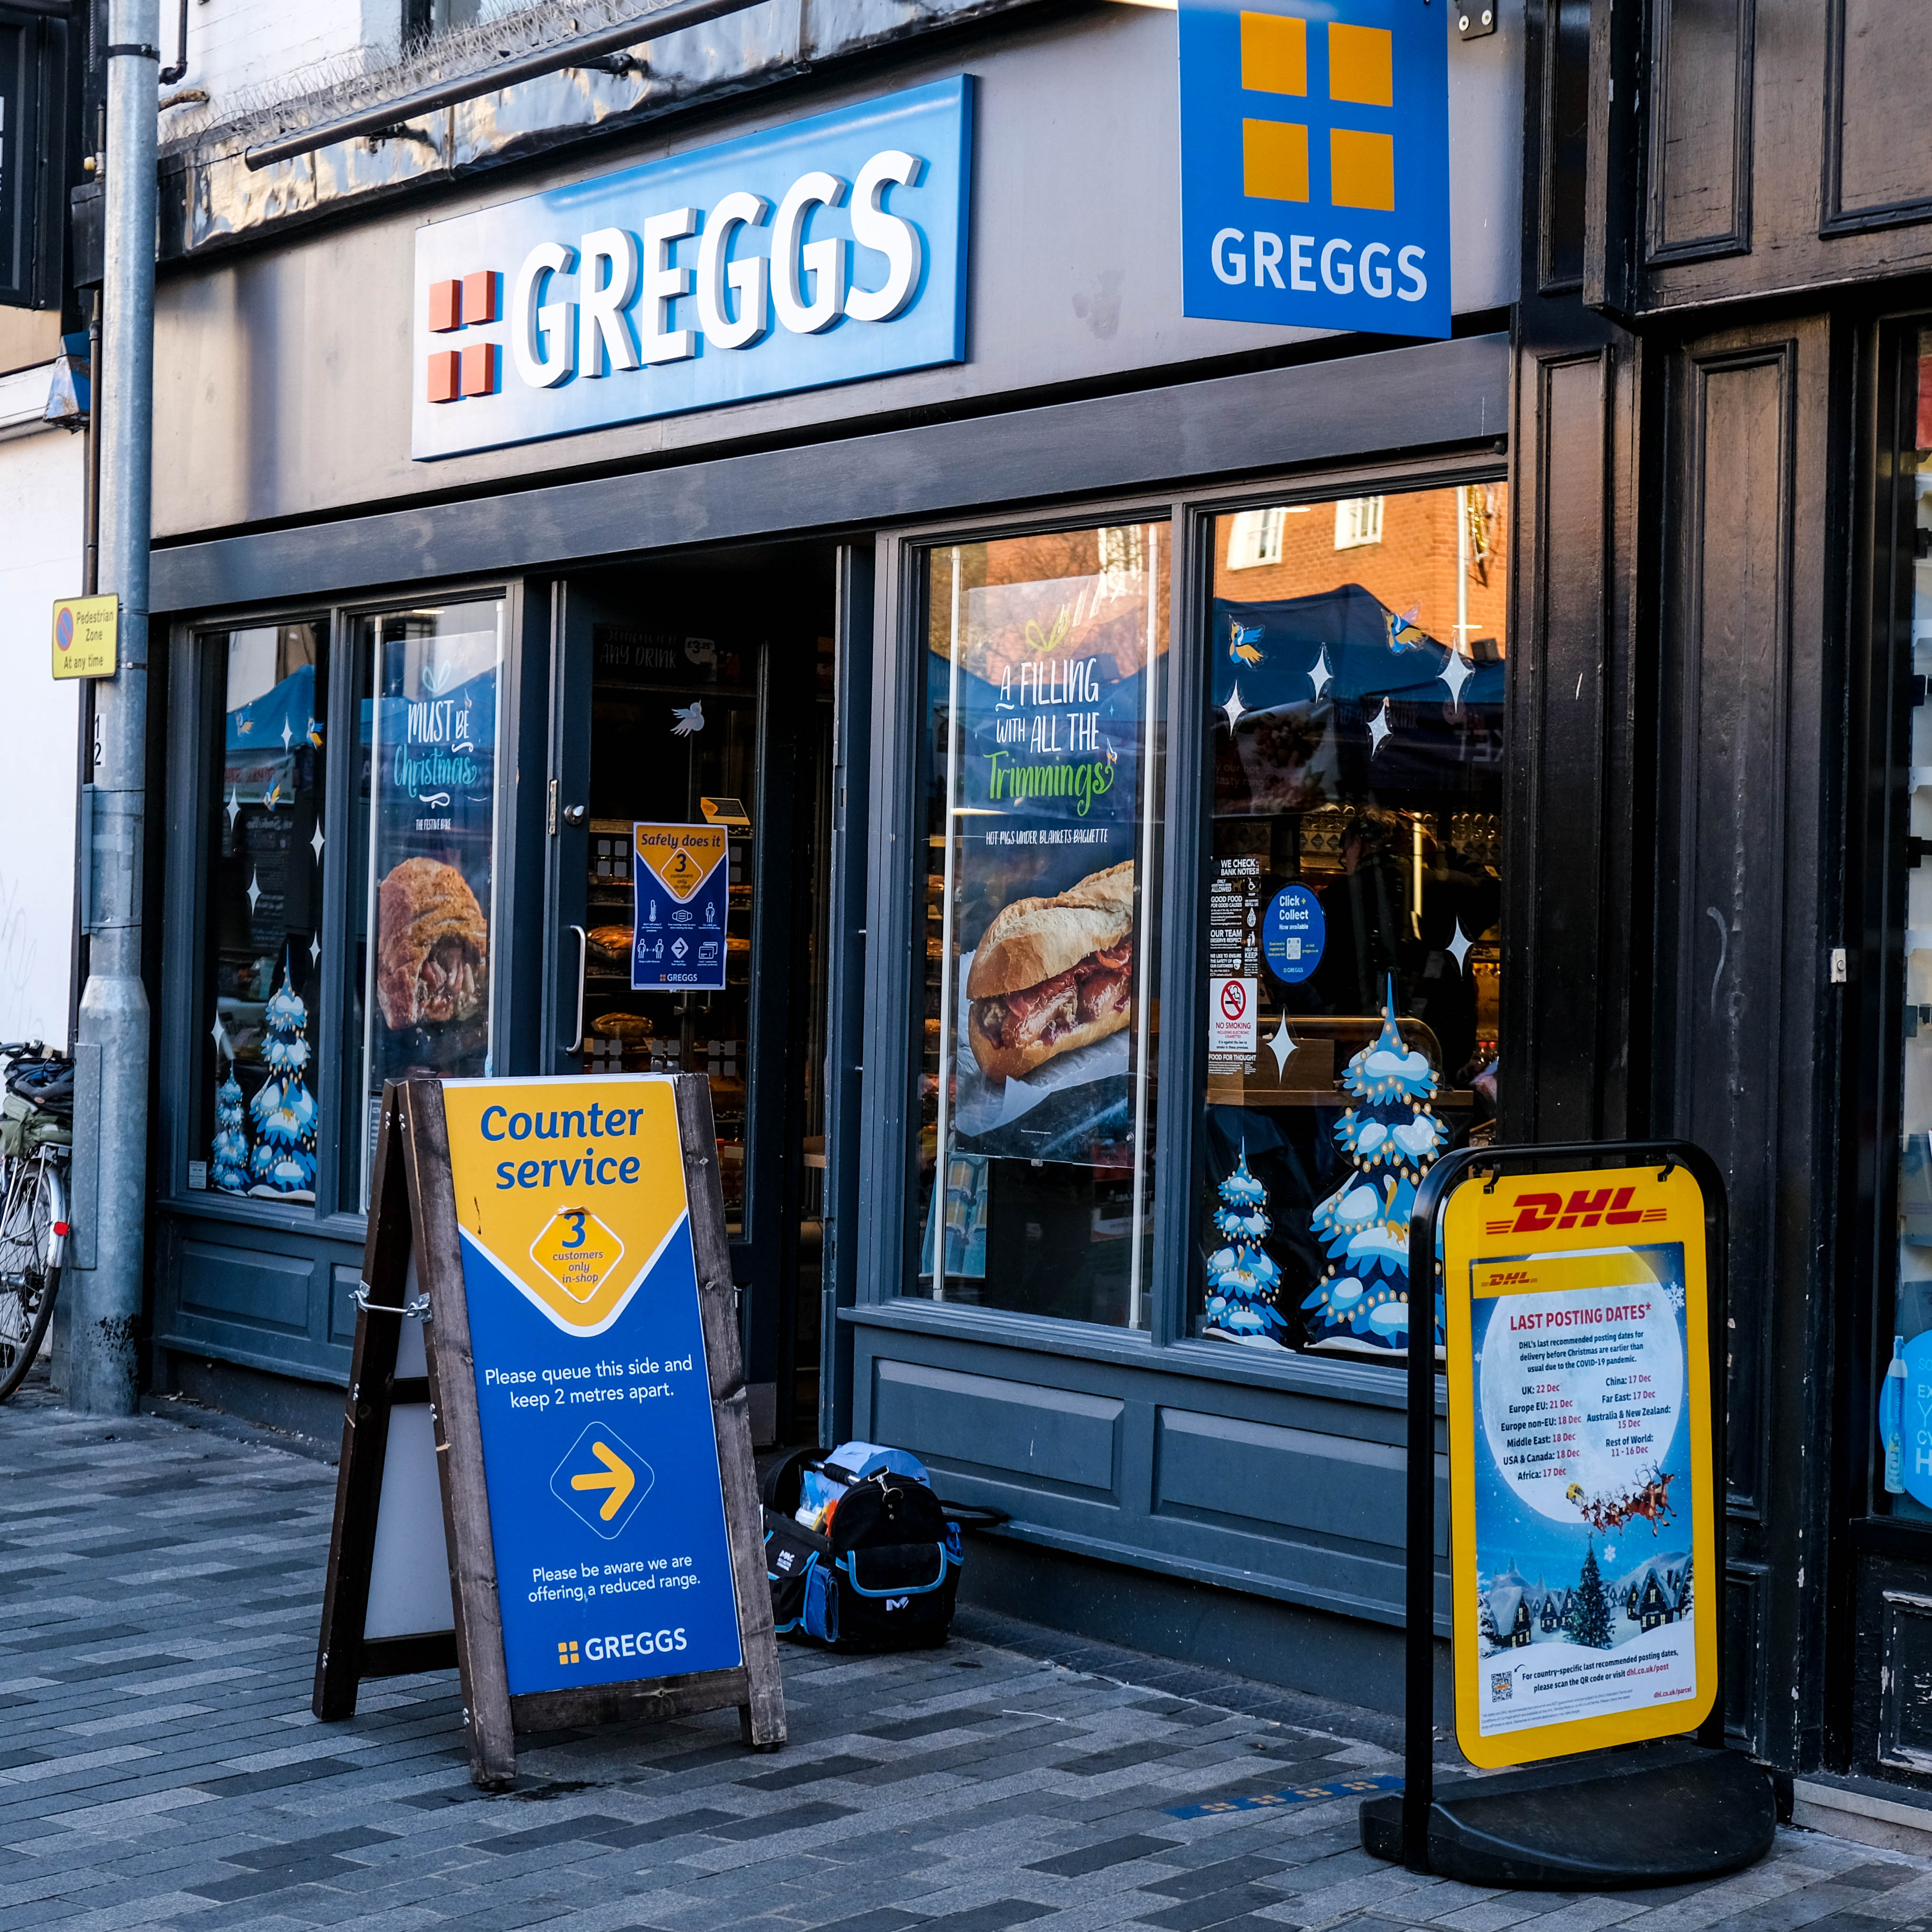 Das Bäckereiunternehmen Greggs verfügt über 2.300 Filialen in ganz Großbritannien